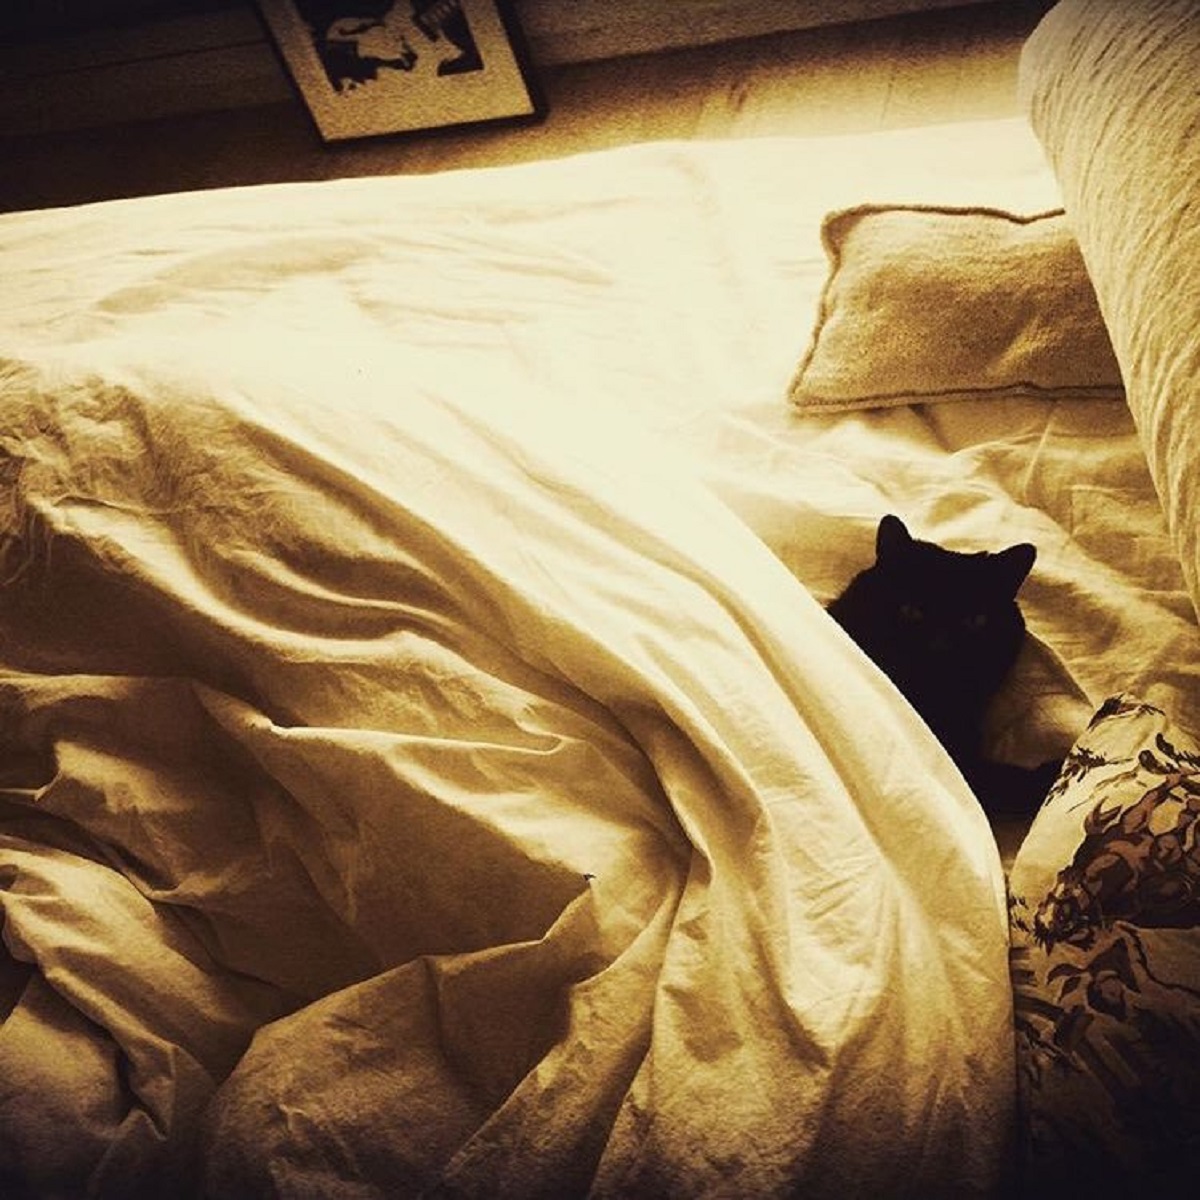 gatto nero sul letto